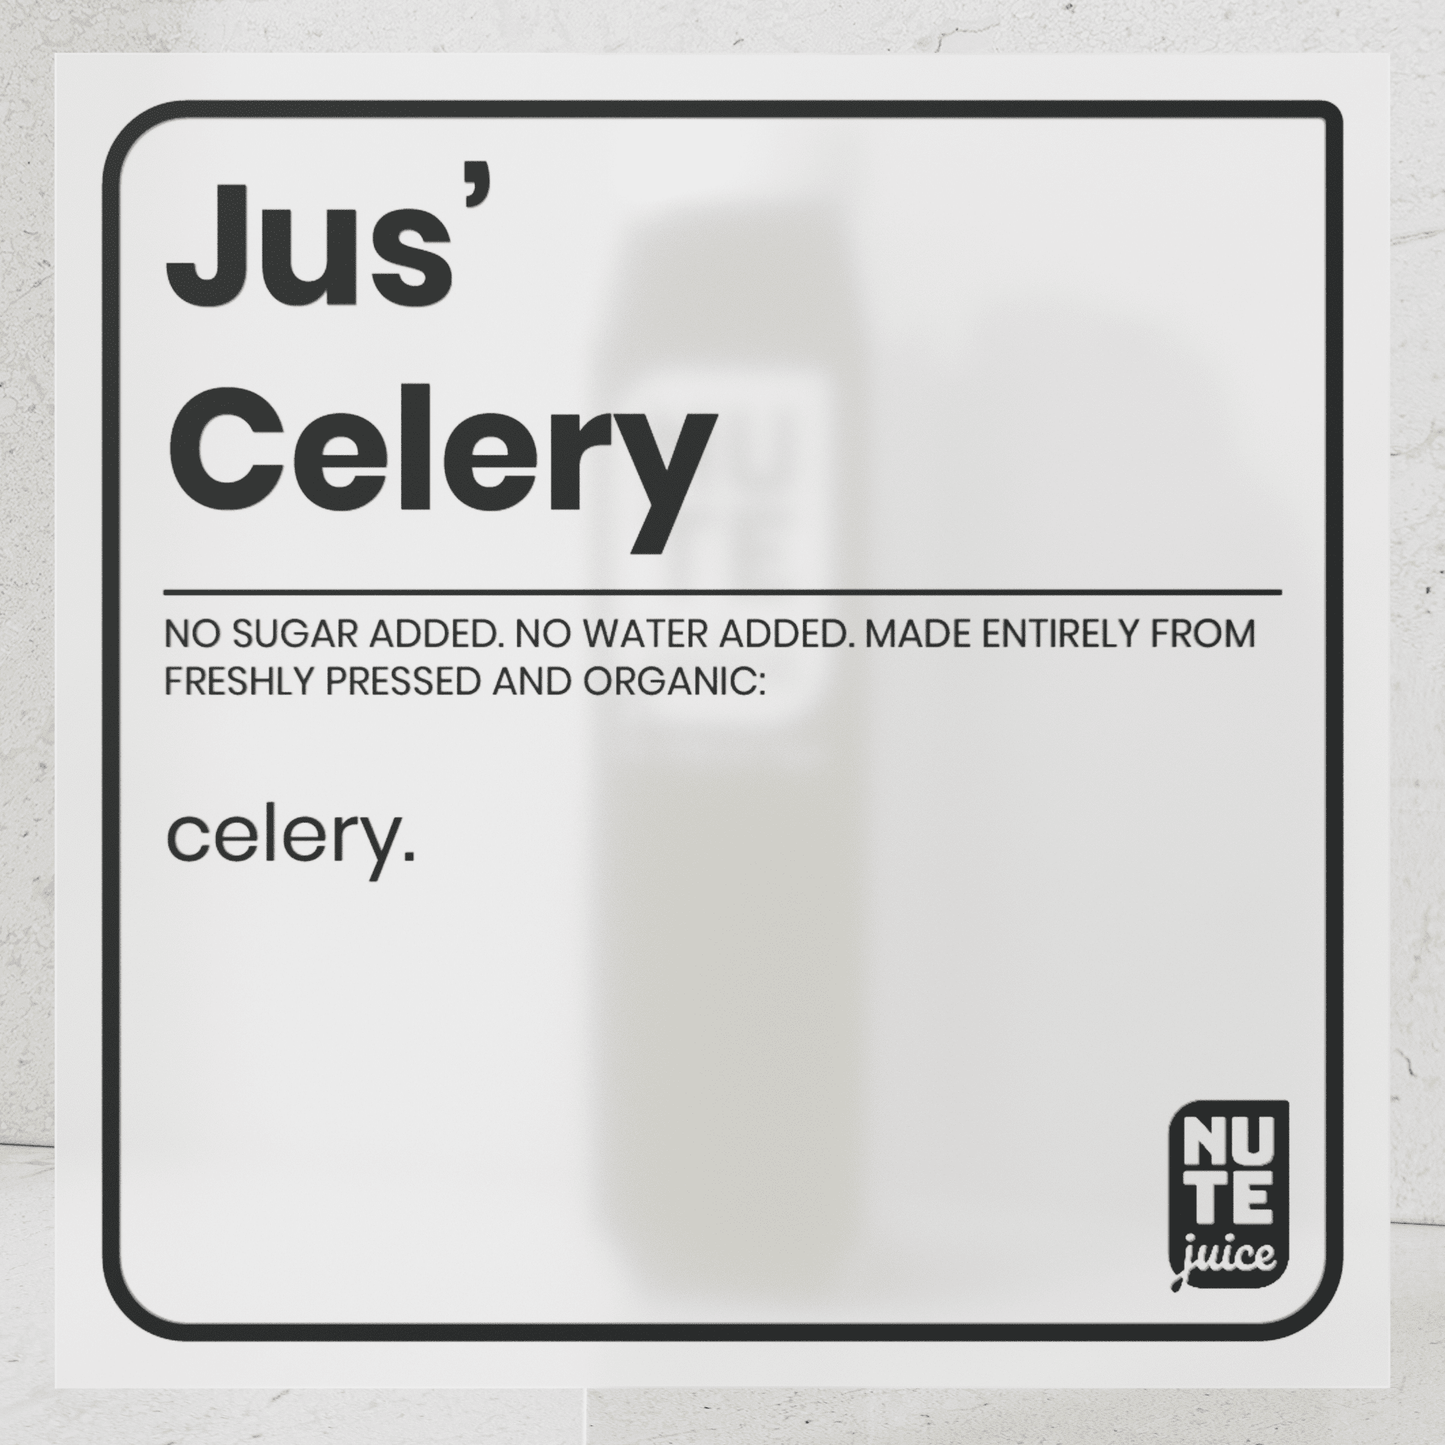 Jus Celery ingredients